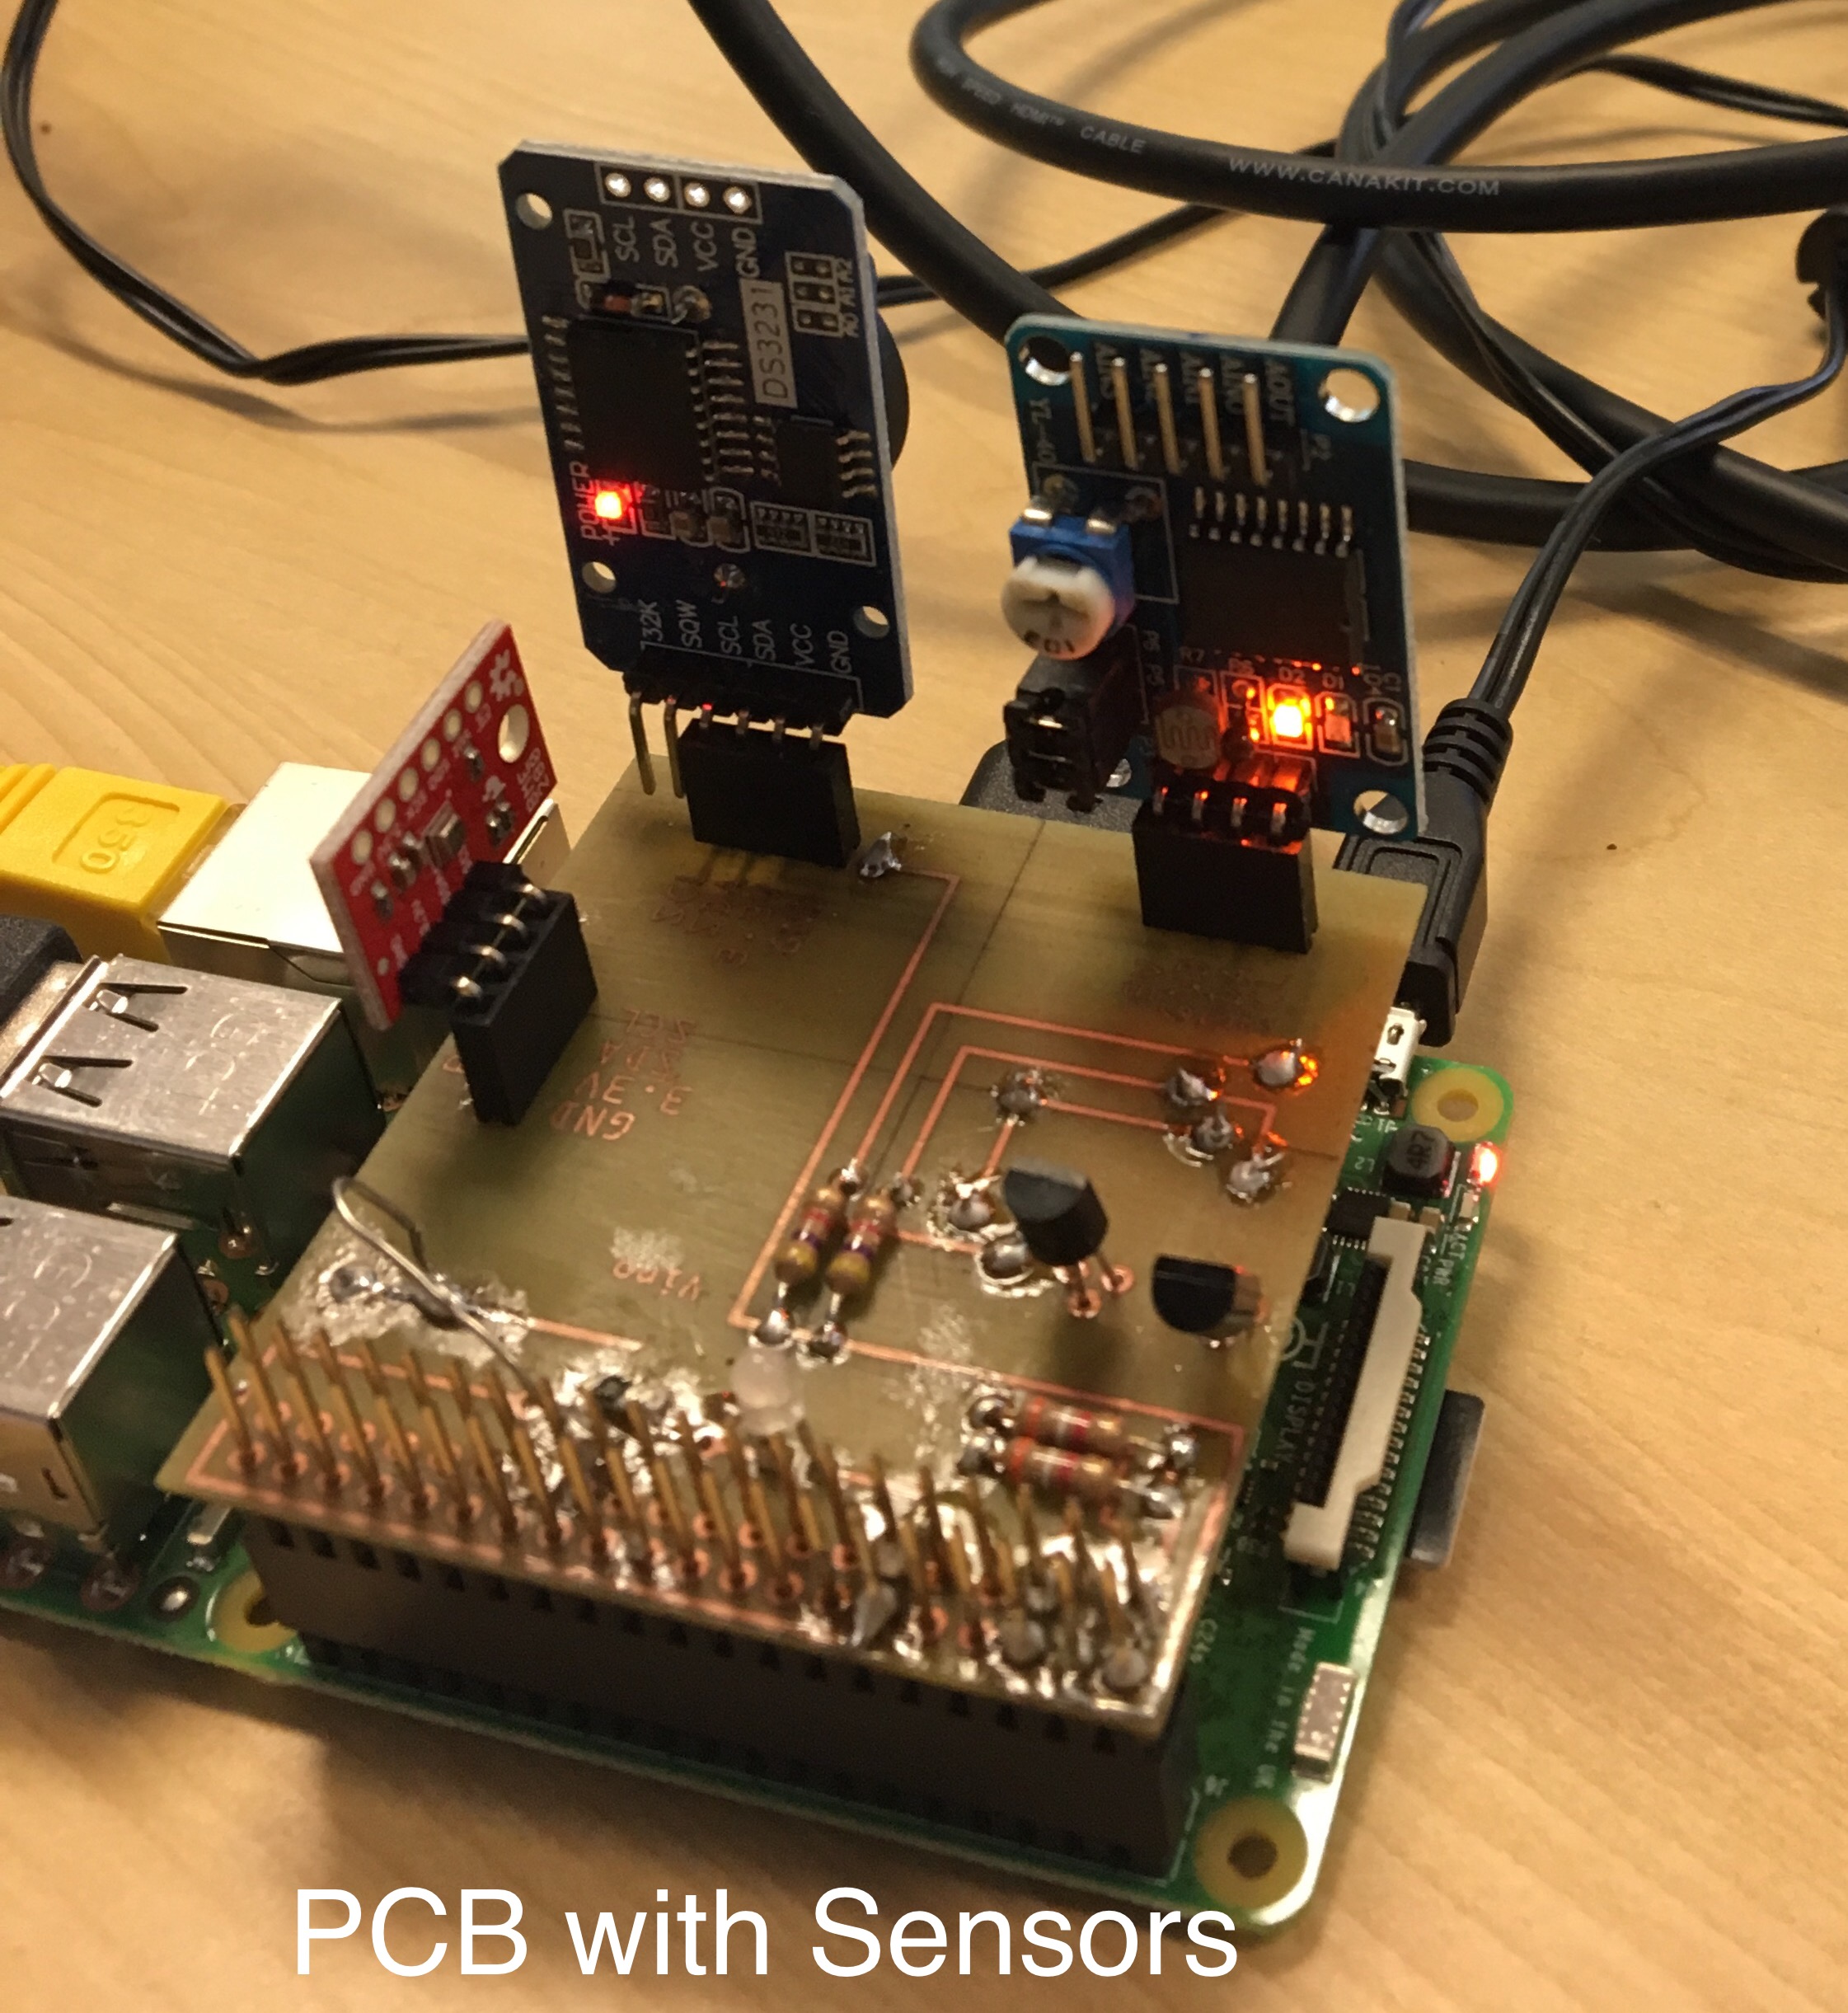 Sensors on PCB